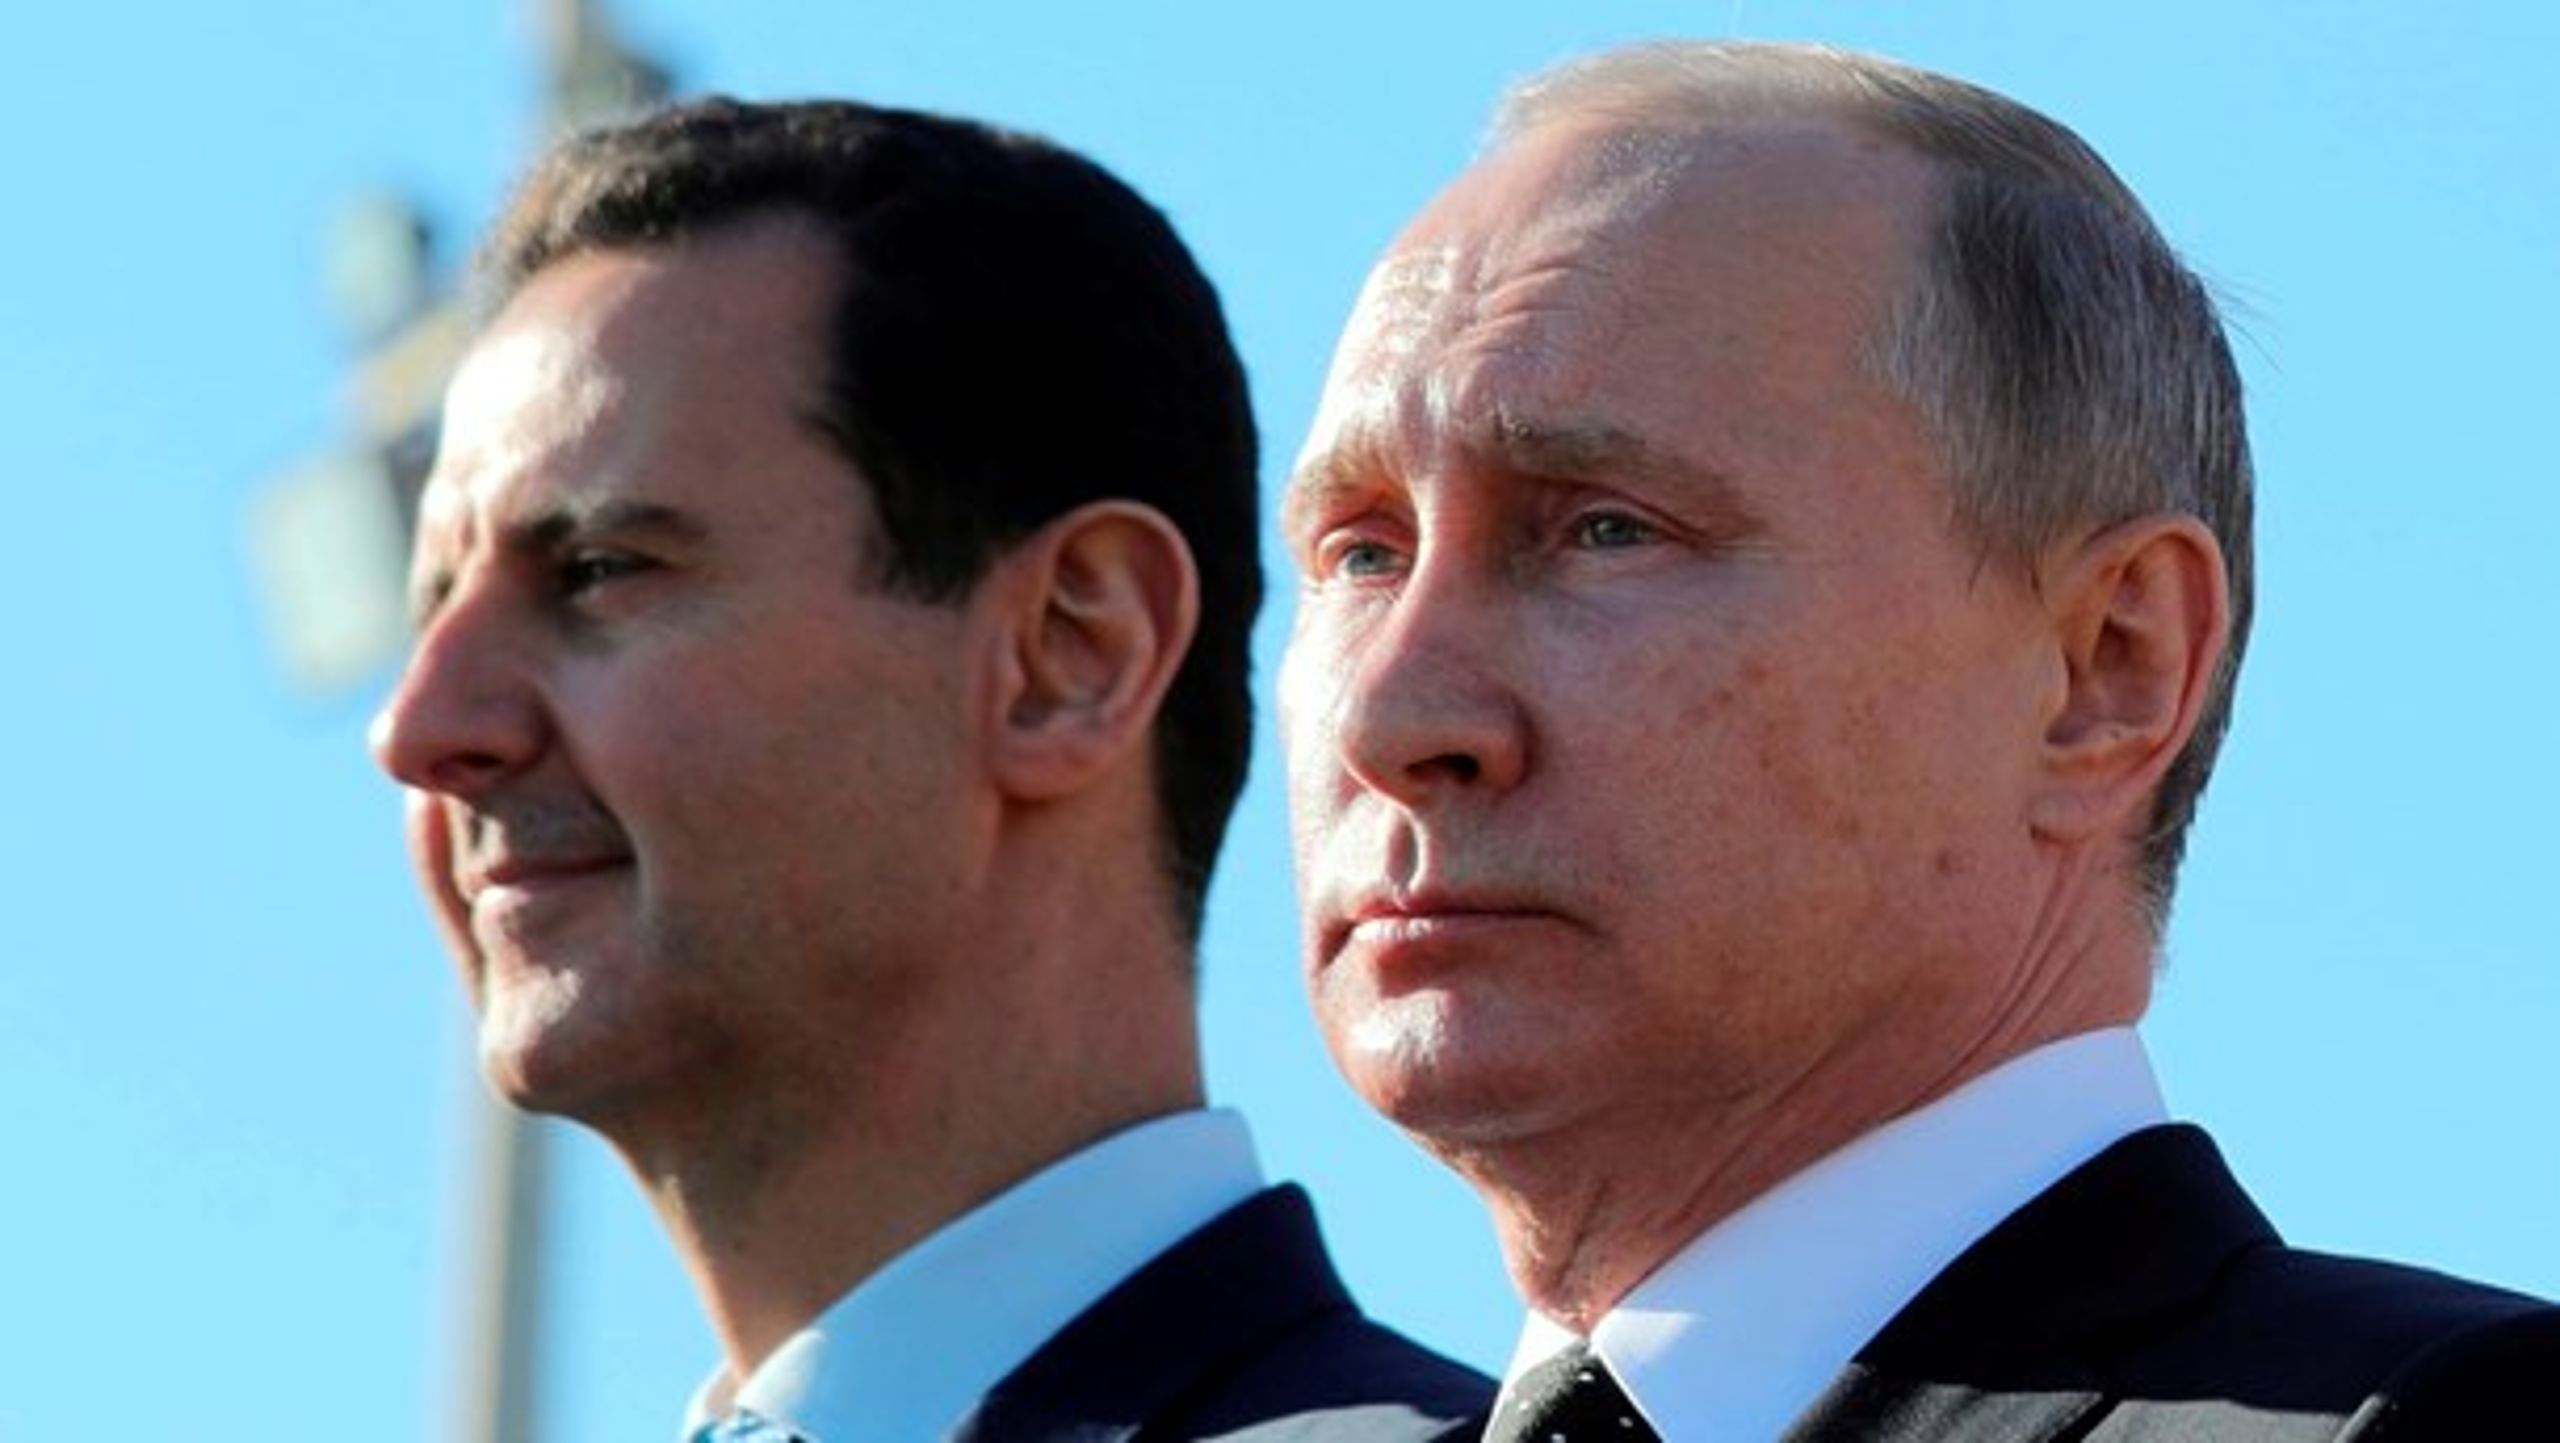 Der vil være uroligt i Syrien i mange år frem, og Rusland kan påvirke en dansk valgkamp. Sådan lyder nogle af forudsigelserne i årets risikovurdering fra Forsvarets Efterretningstjeneste. Her er det Syriens præsident Assad og Ruslands præsident Putin.